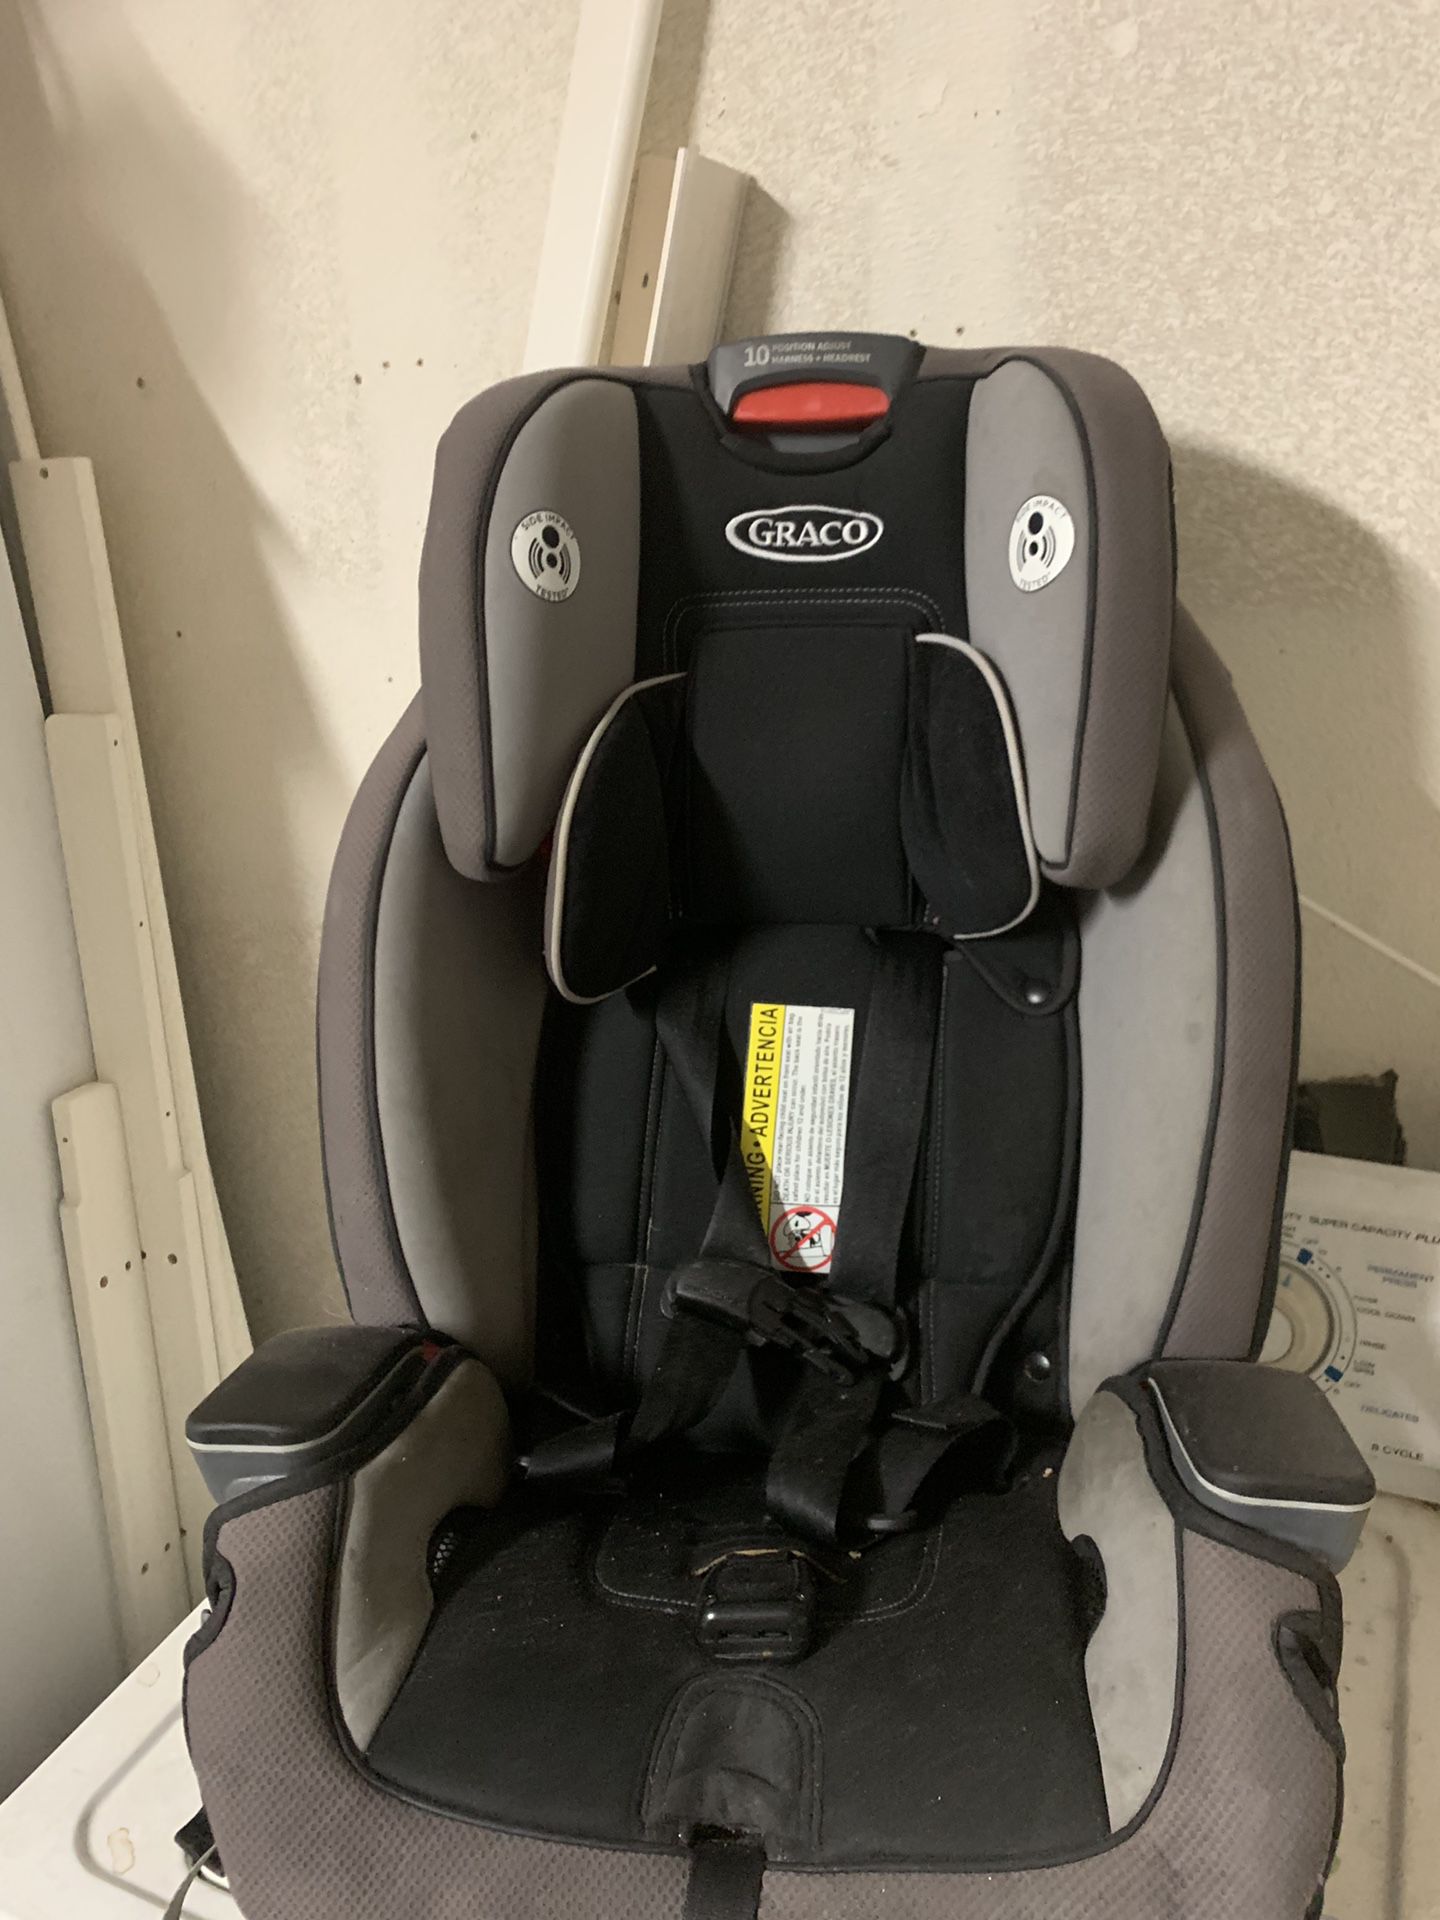 Grace milestone car seat